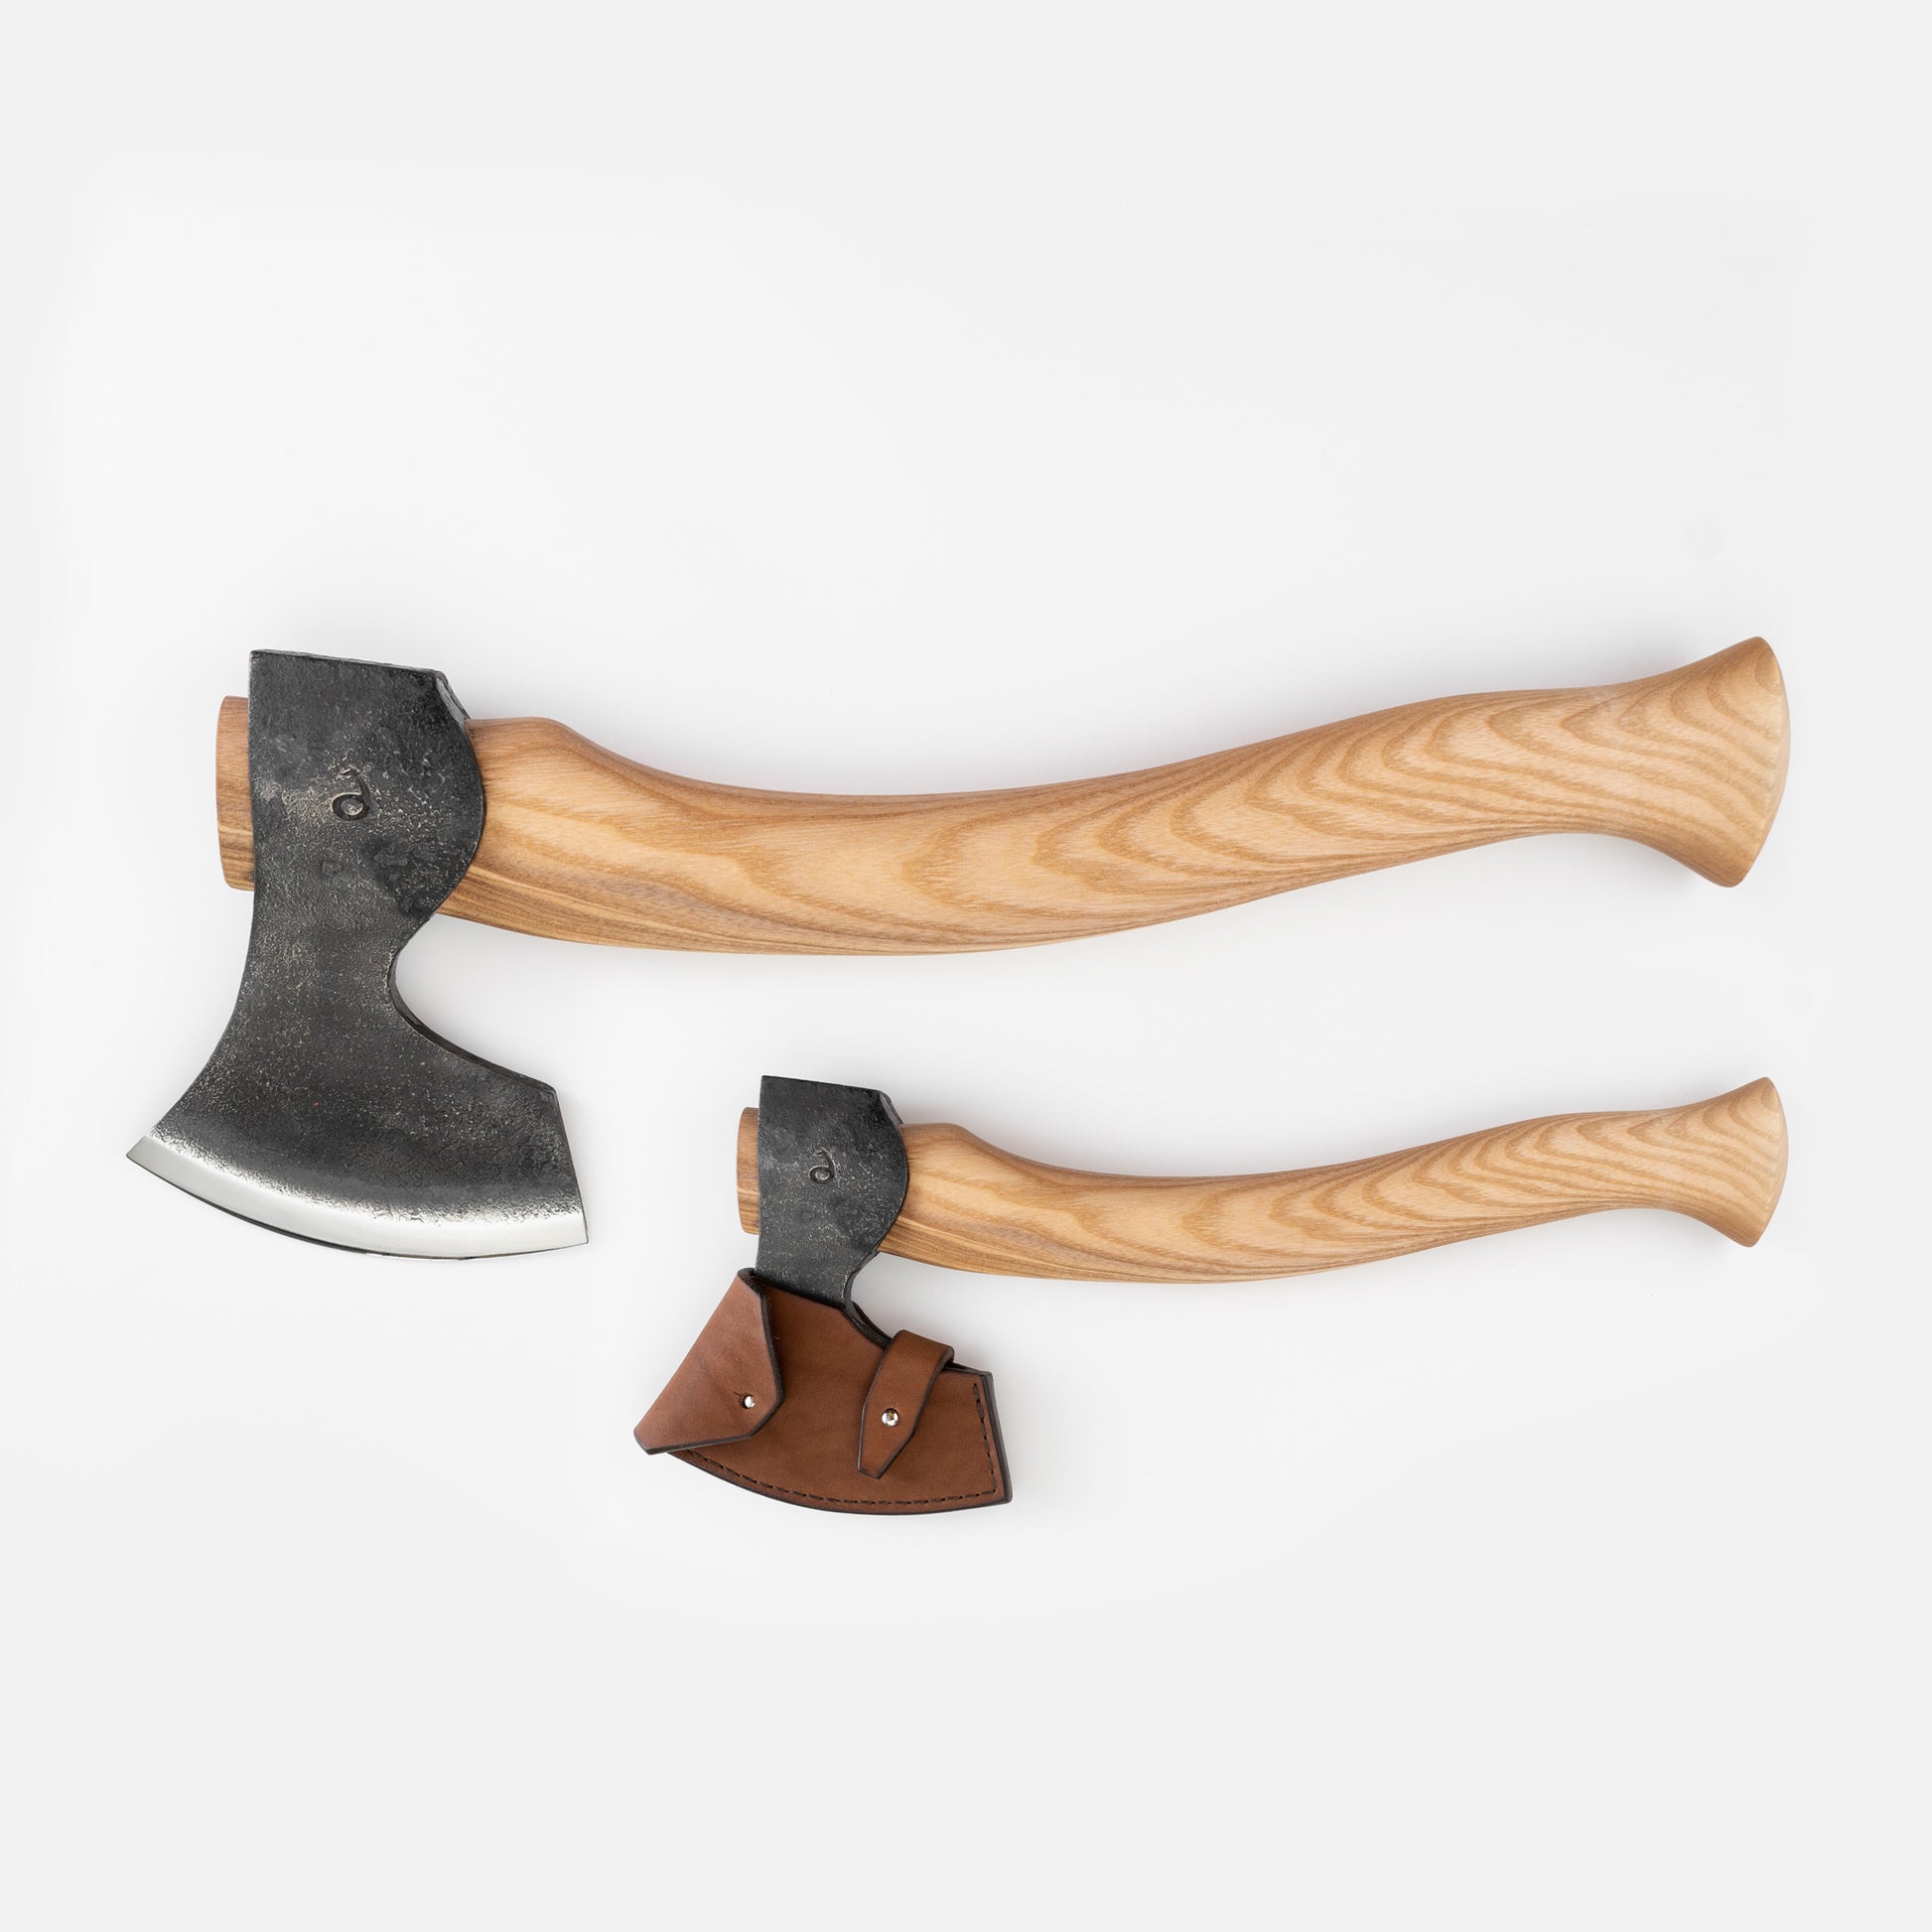 Small Carving Axe – Fadir.tool